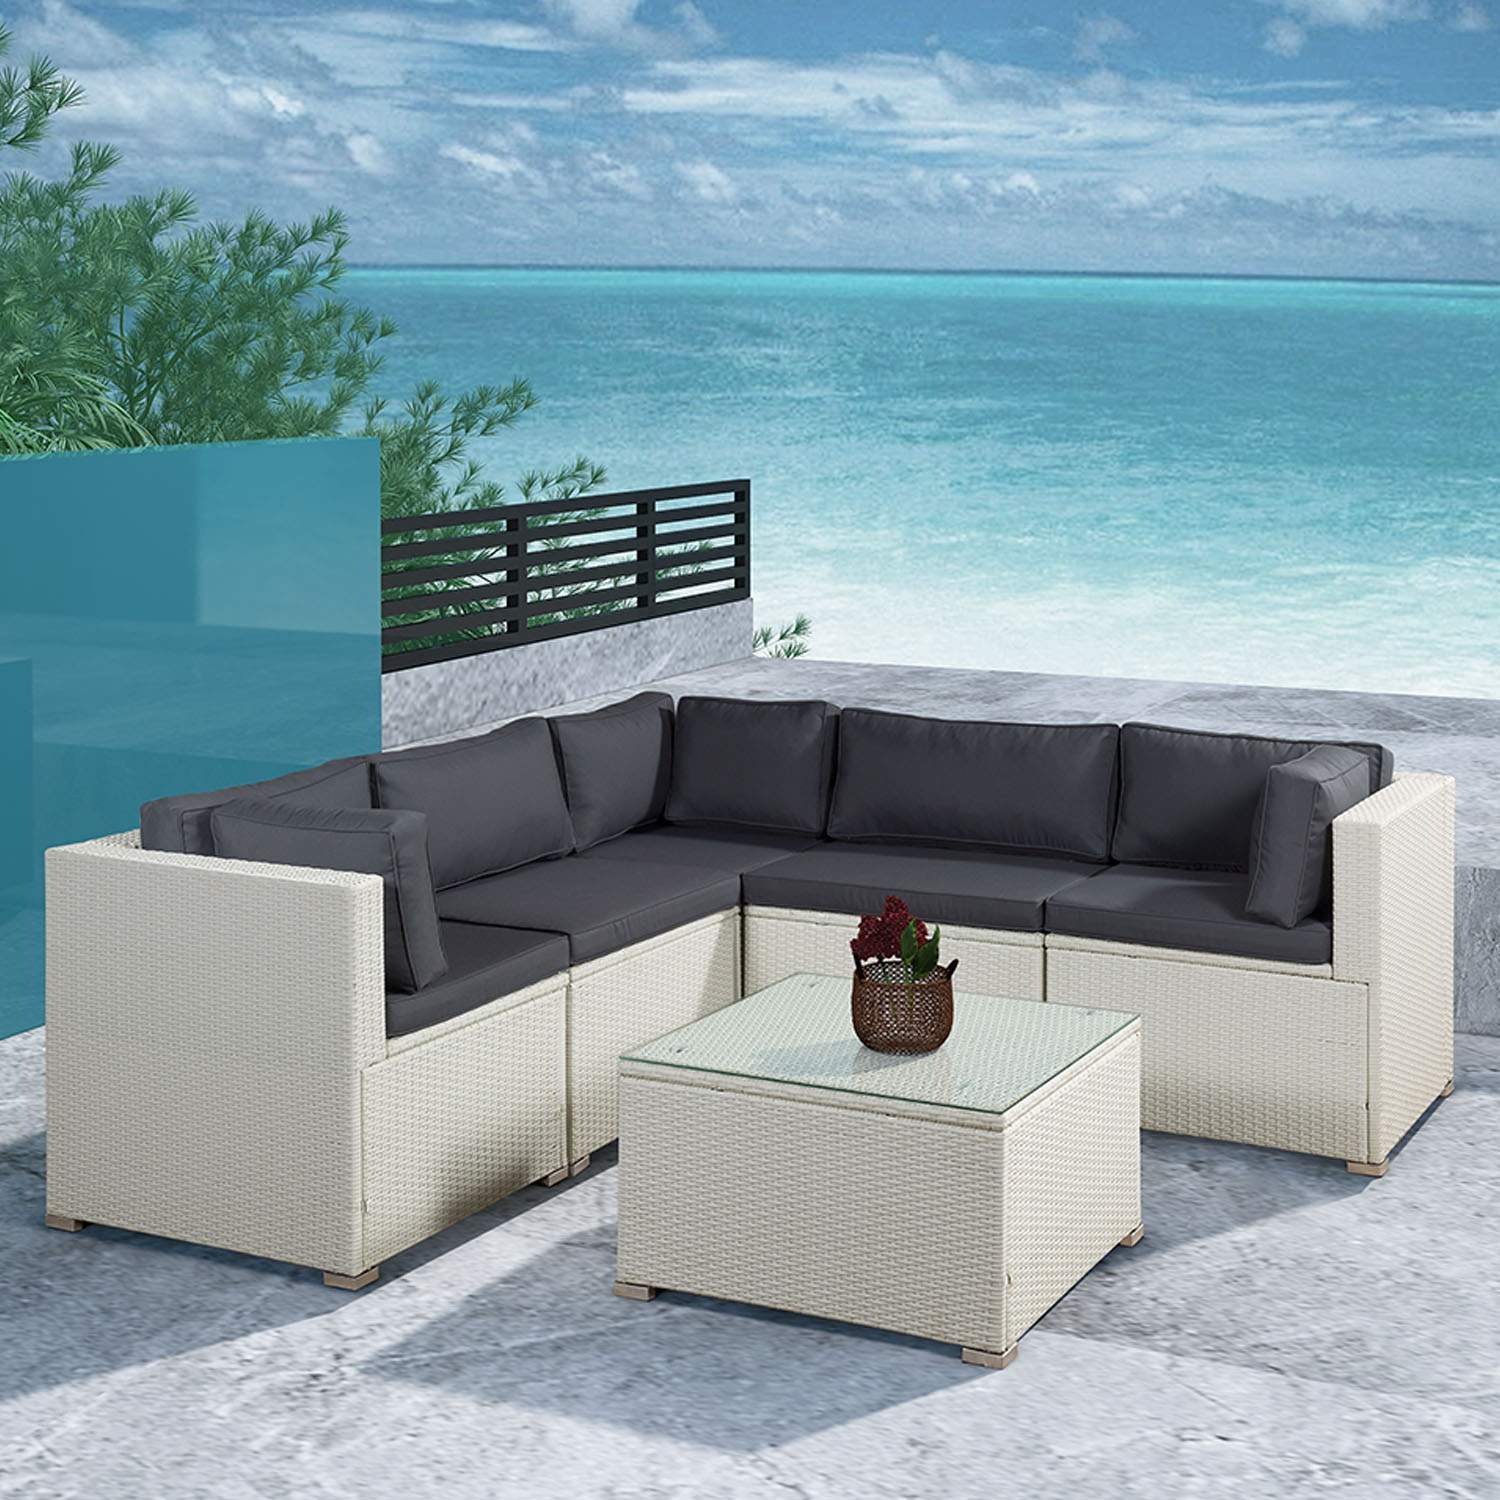 Lounge Ecksofa Garten Elegant Trendy Lounge Polyrattan Sitzgruppe